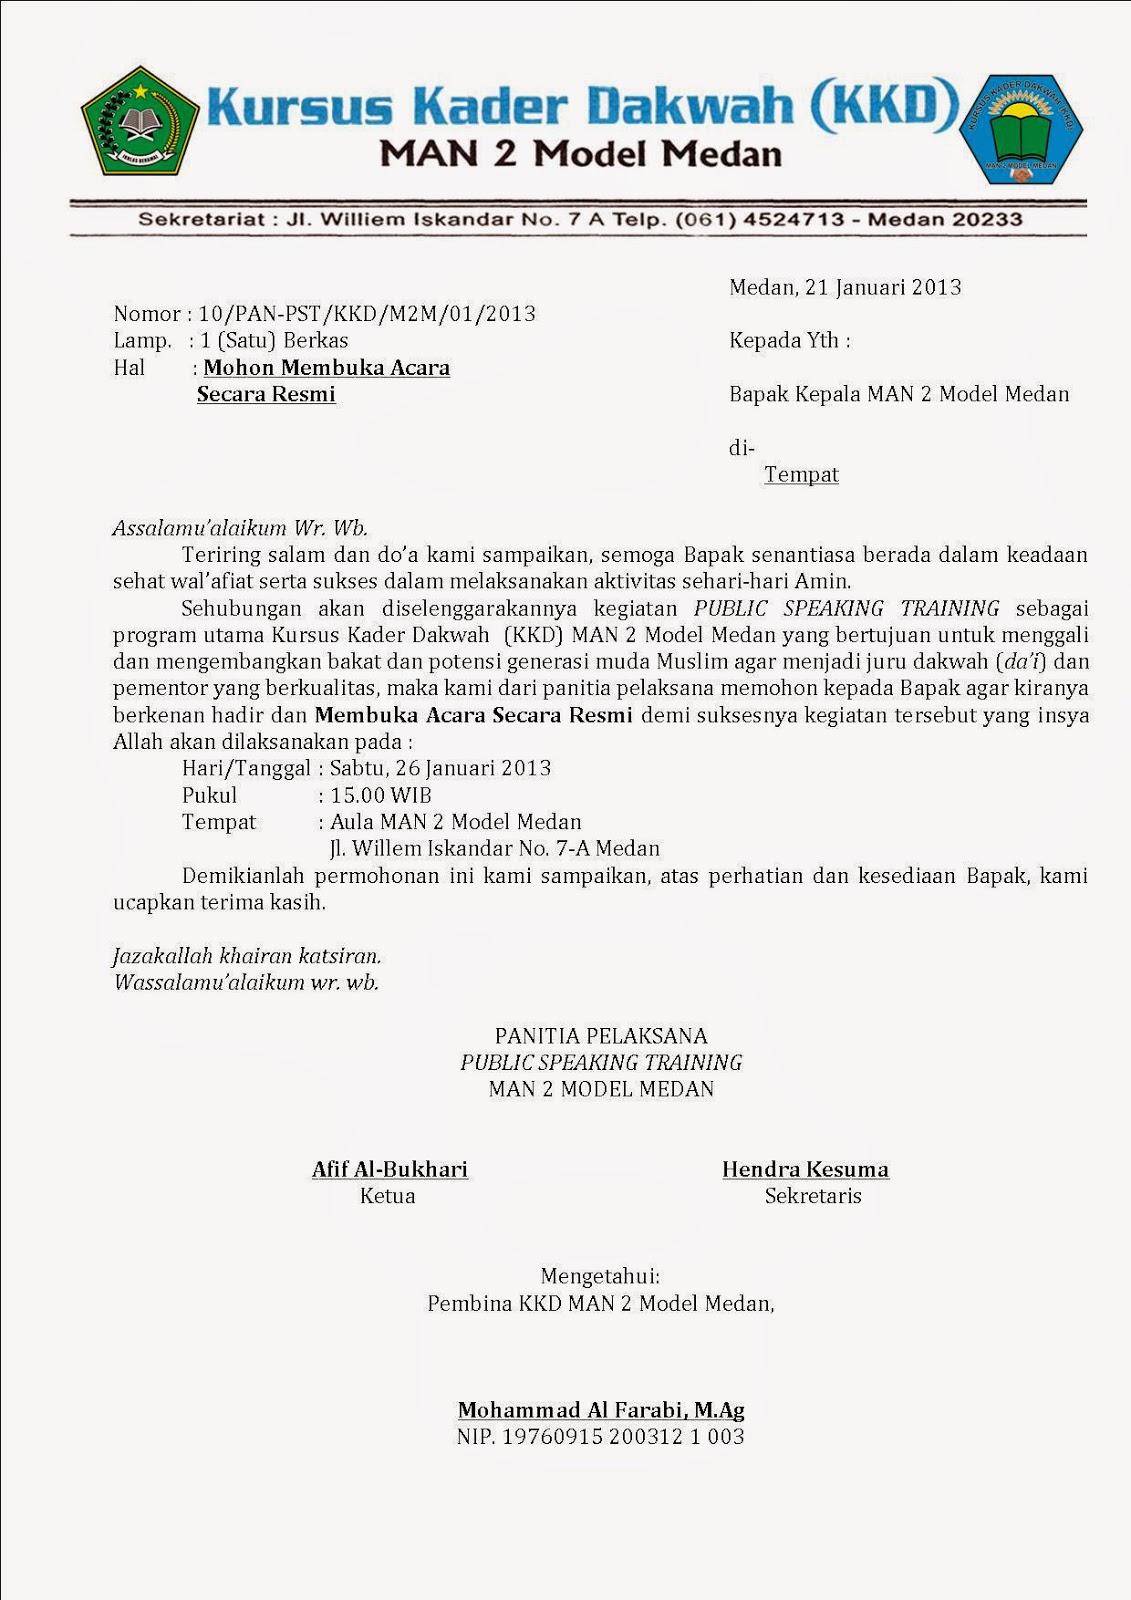 Contoh Berkas Berformat Jpg ~ KKD MAN 2 MODEL MEDAN